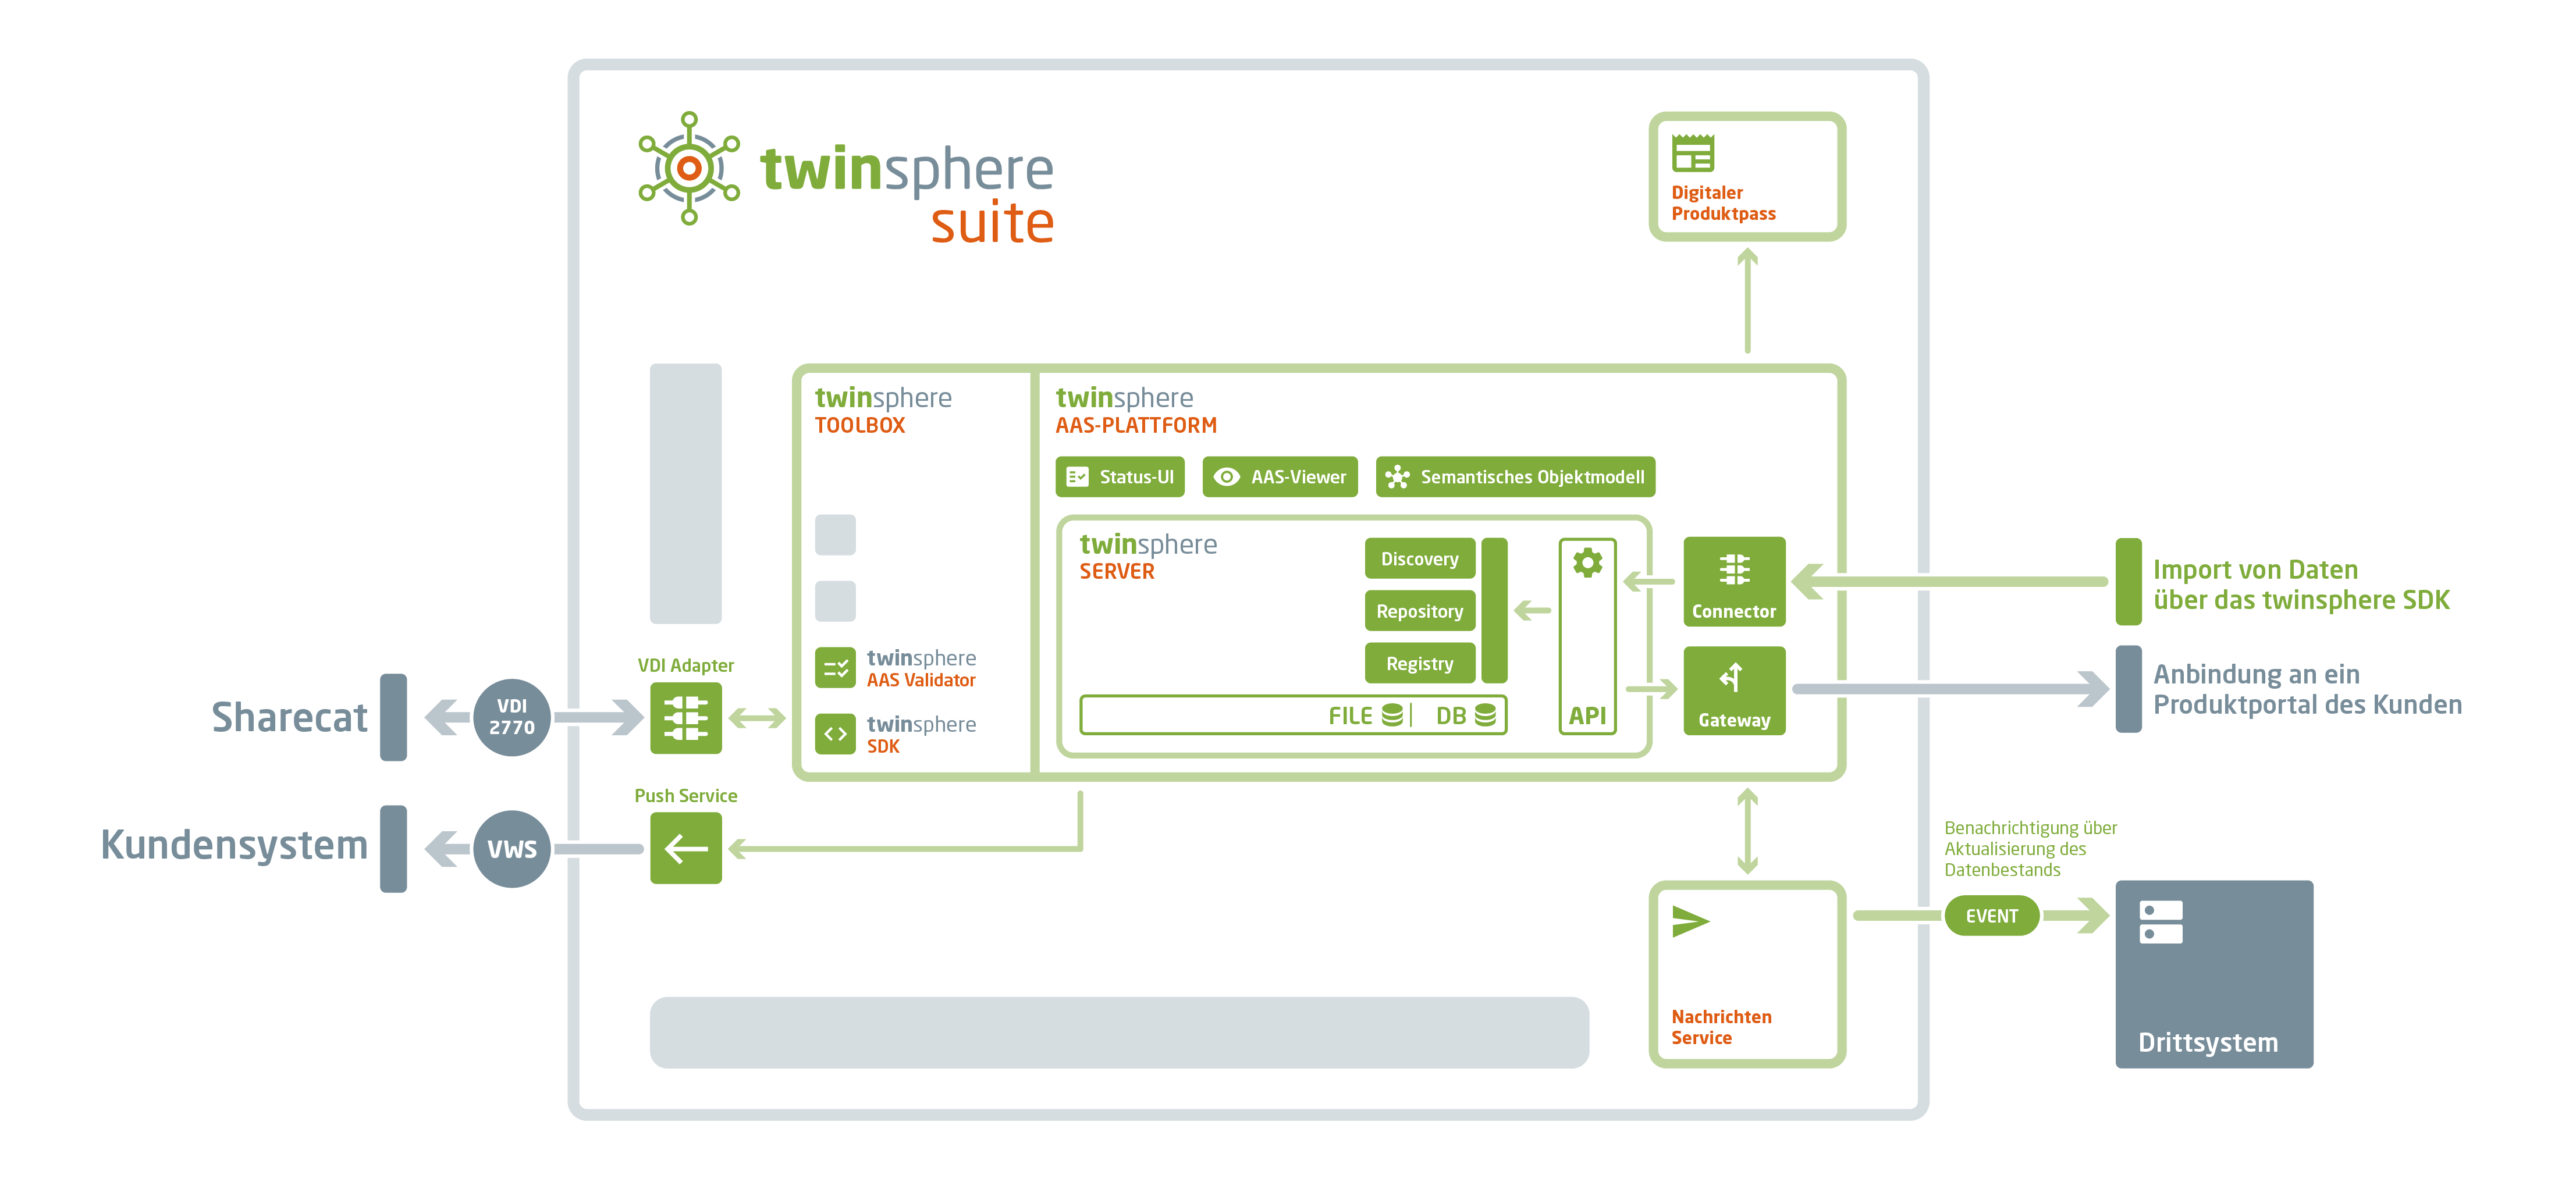 SaaS-Plattform Twinsphere Suite für neue Services und Geschäftsmodelle